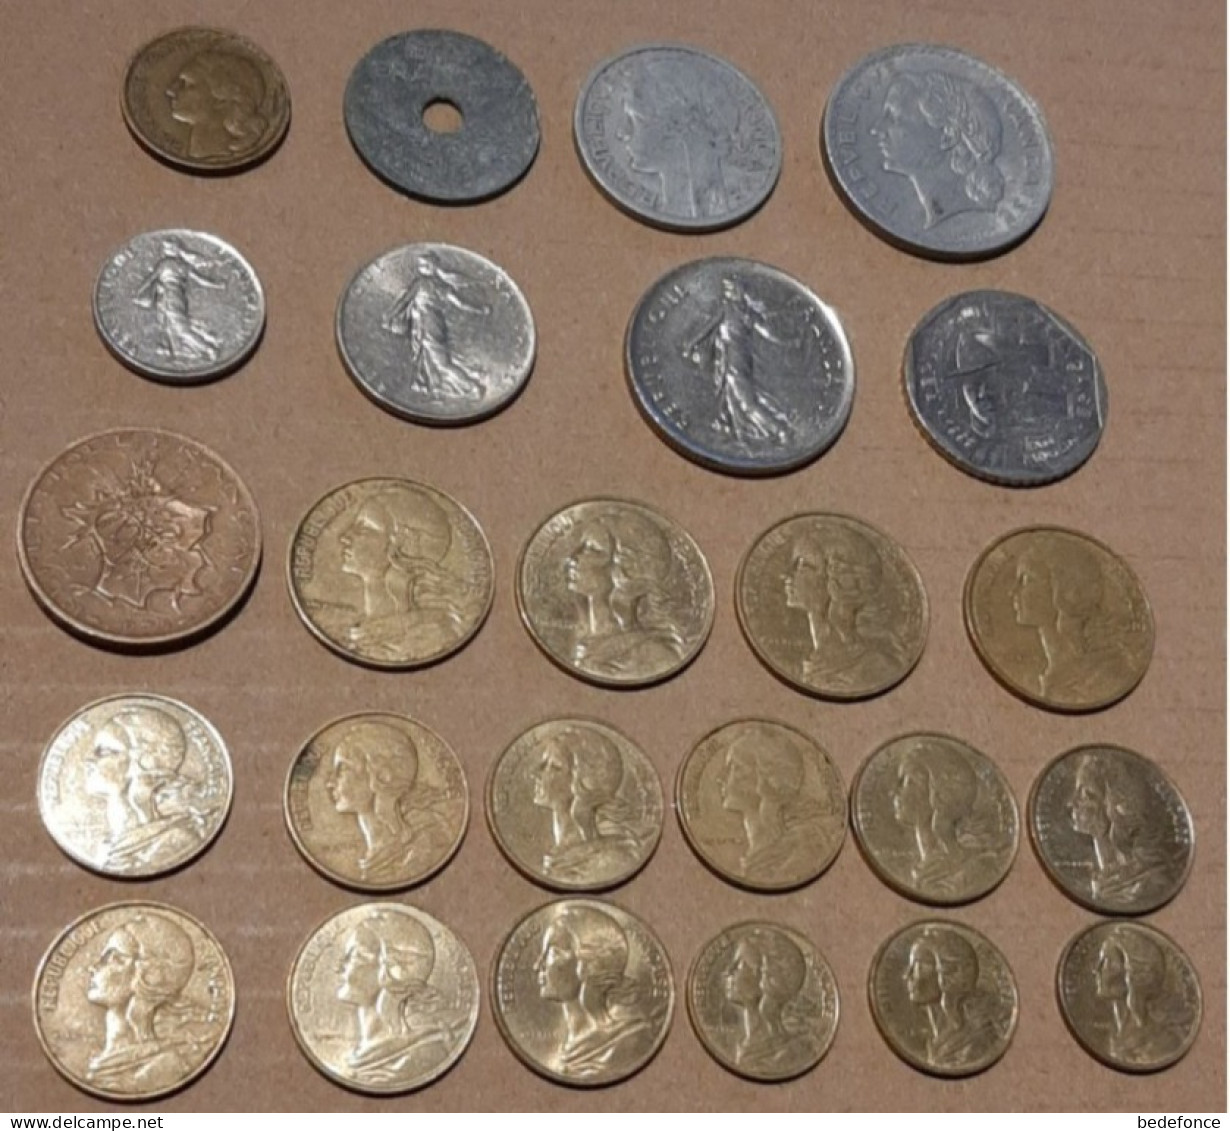 Monnaie - France - Lot De Monnaies Années 1946 à 1997 - Verzamelingen